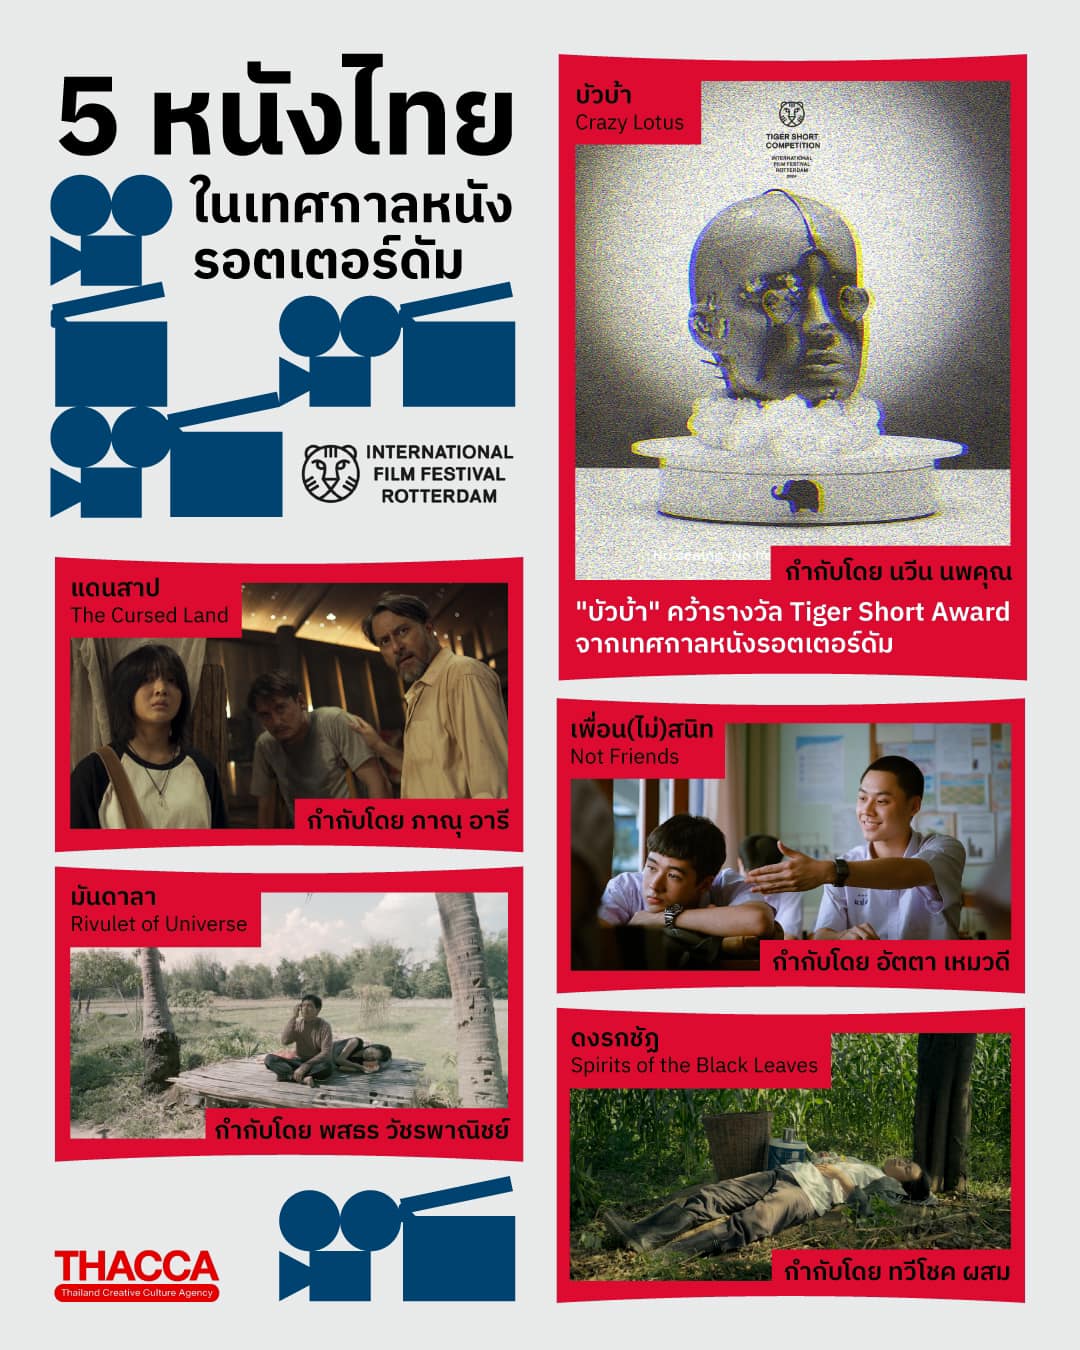 "บัวบ้า (Crazy Lotus)" ภาพยนตร์ไทยคว้ารางวัล "Tiger Short Award" ในเทศกาลภาพยนตร์นานาชาติรอตเตอร์ดัม